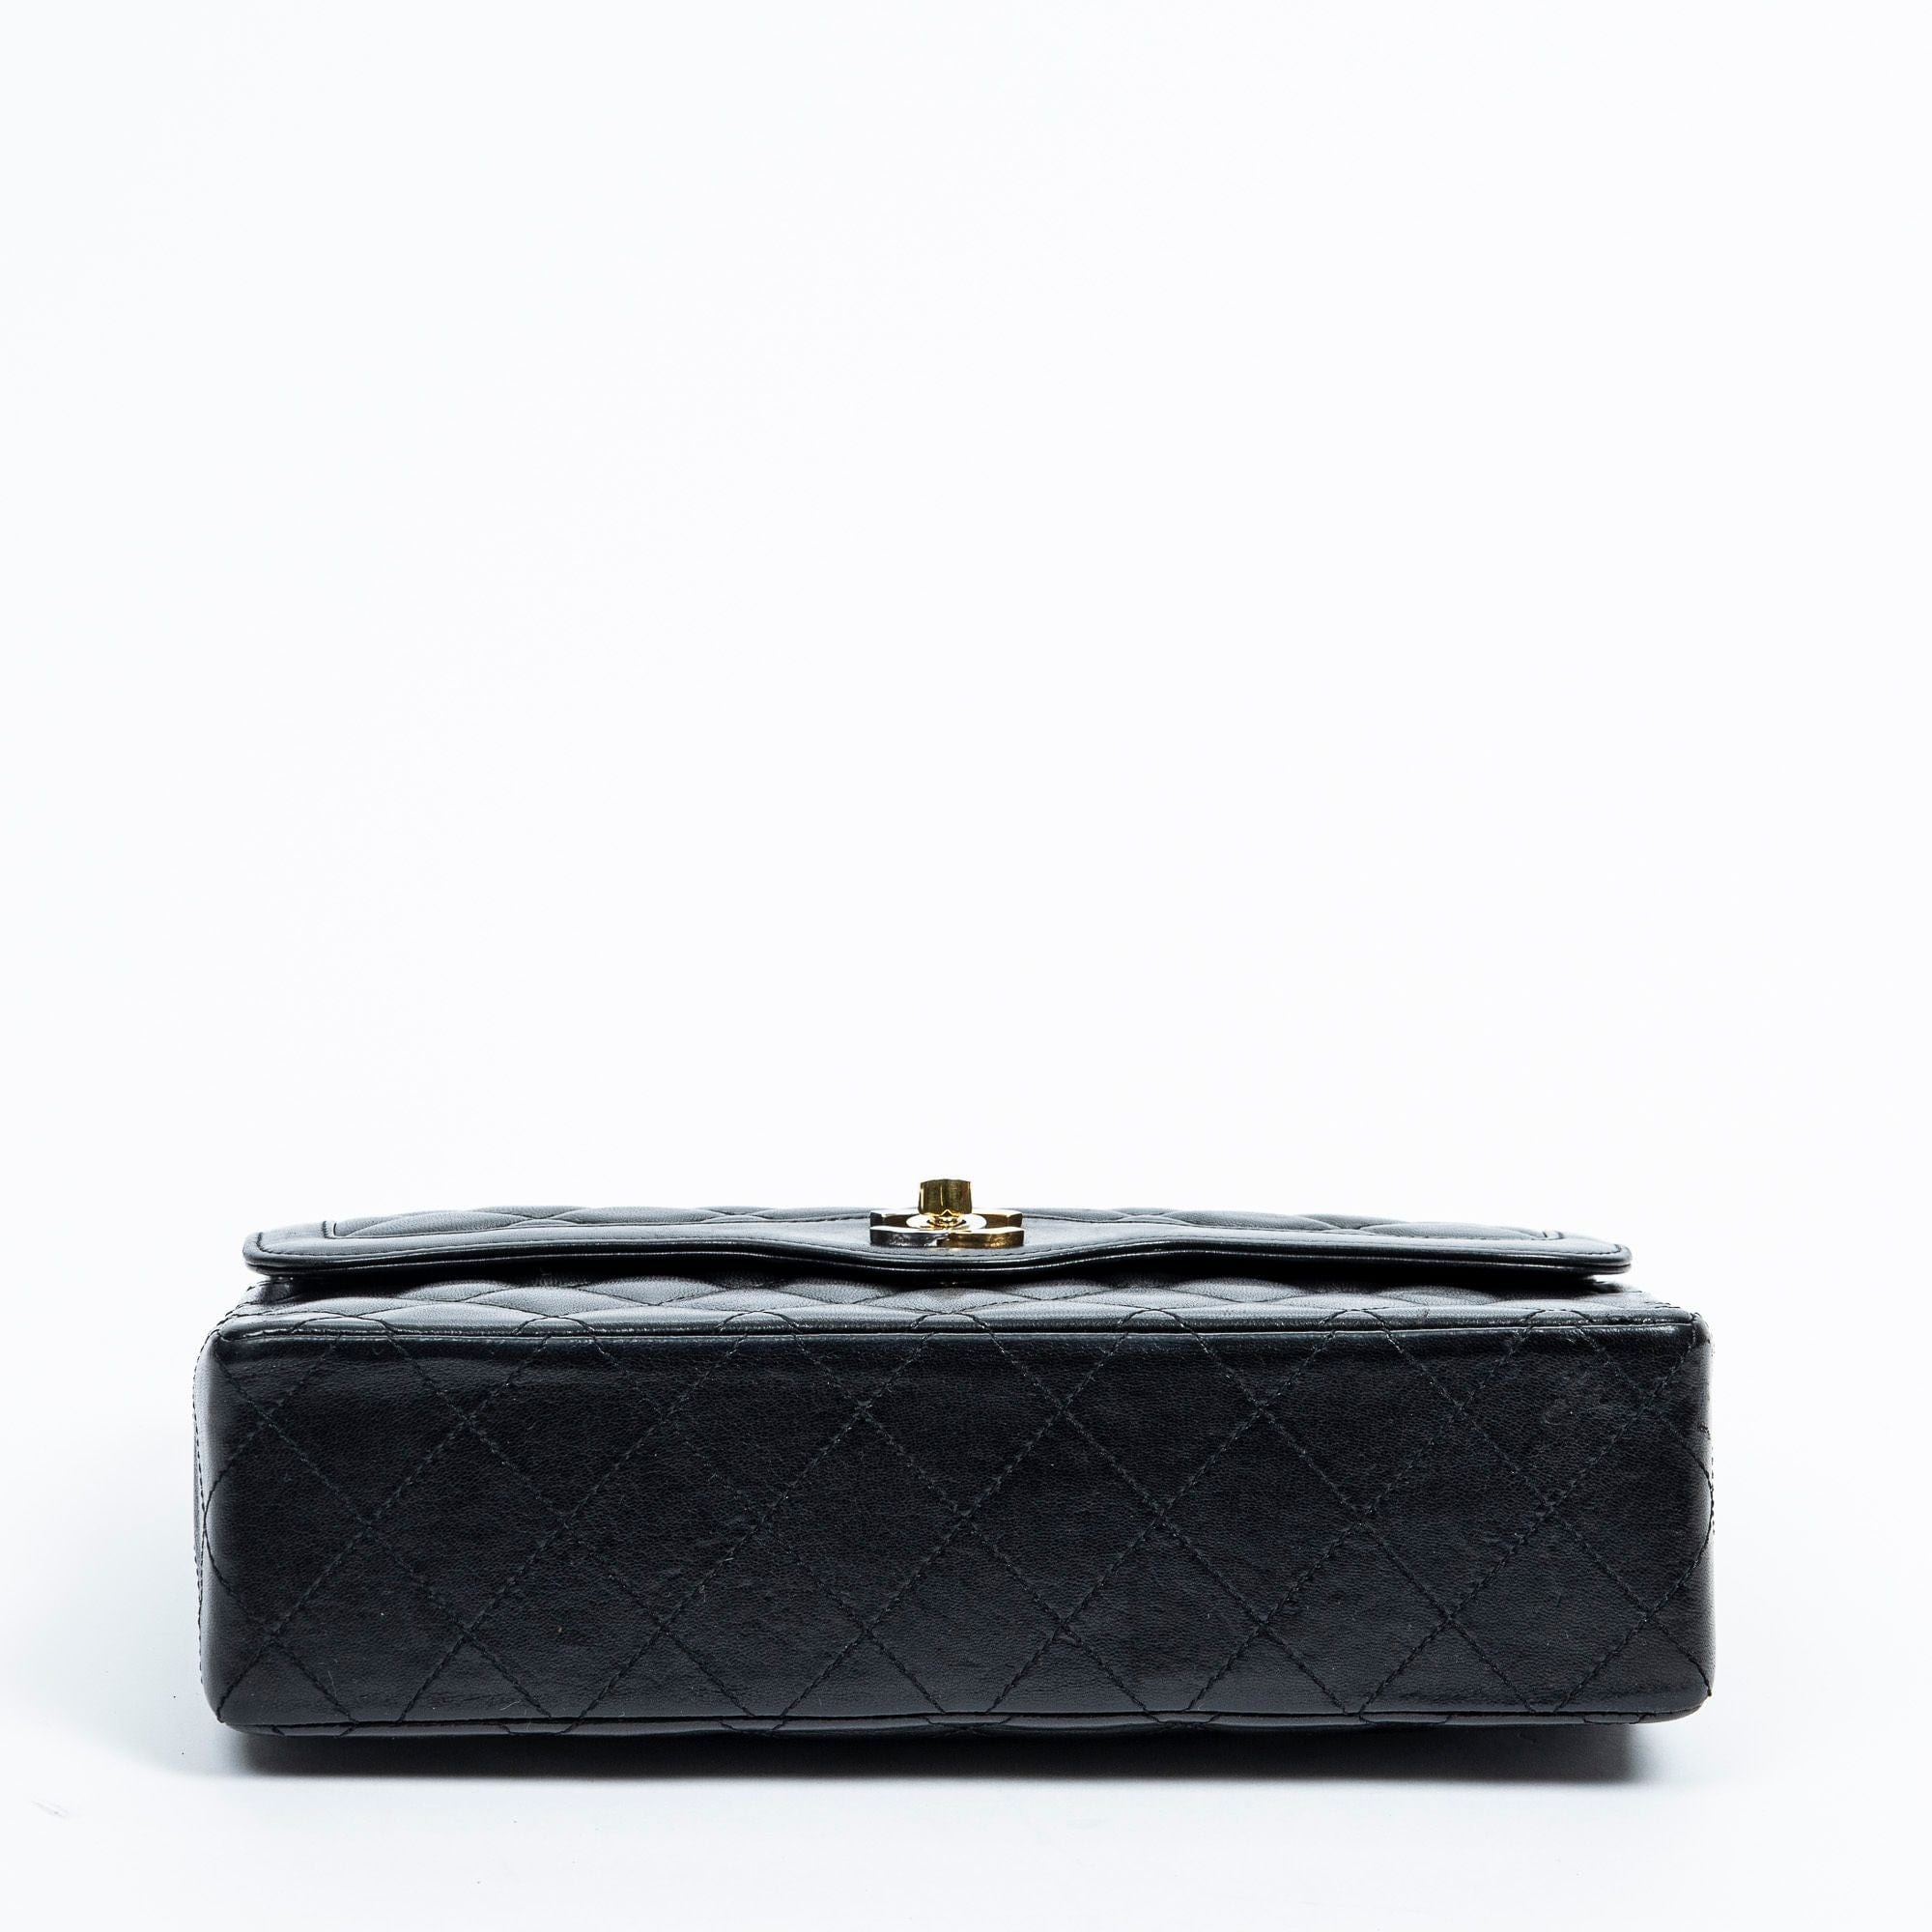 Chanel Chanel Black CC Paris Double Flap Bag - AWL2162